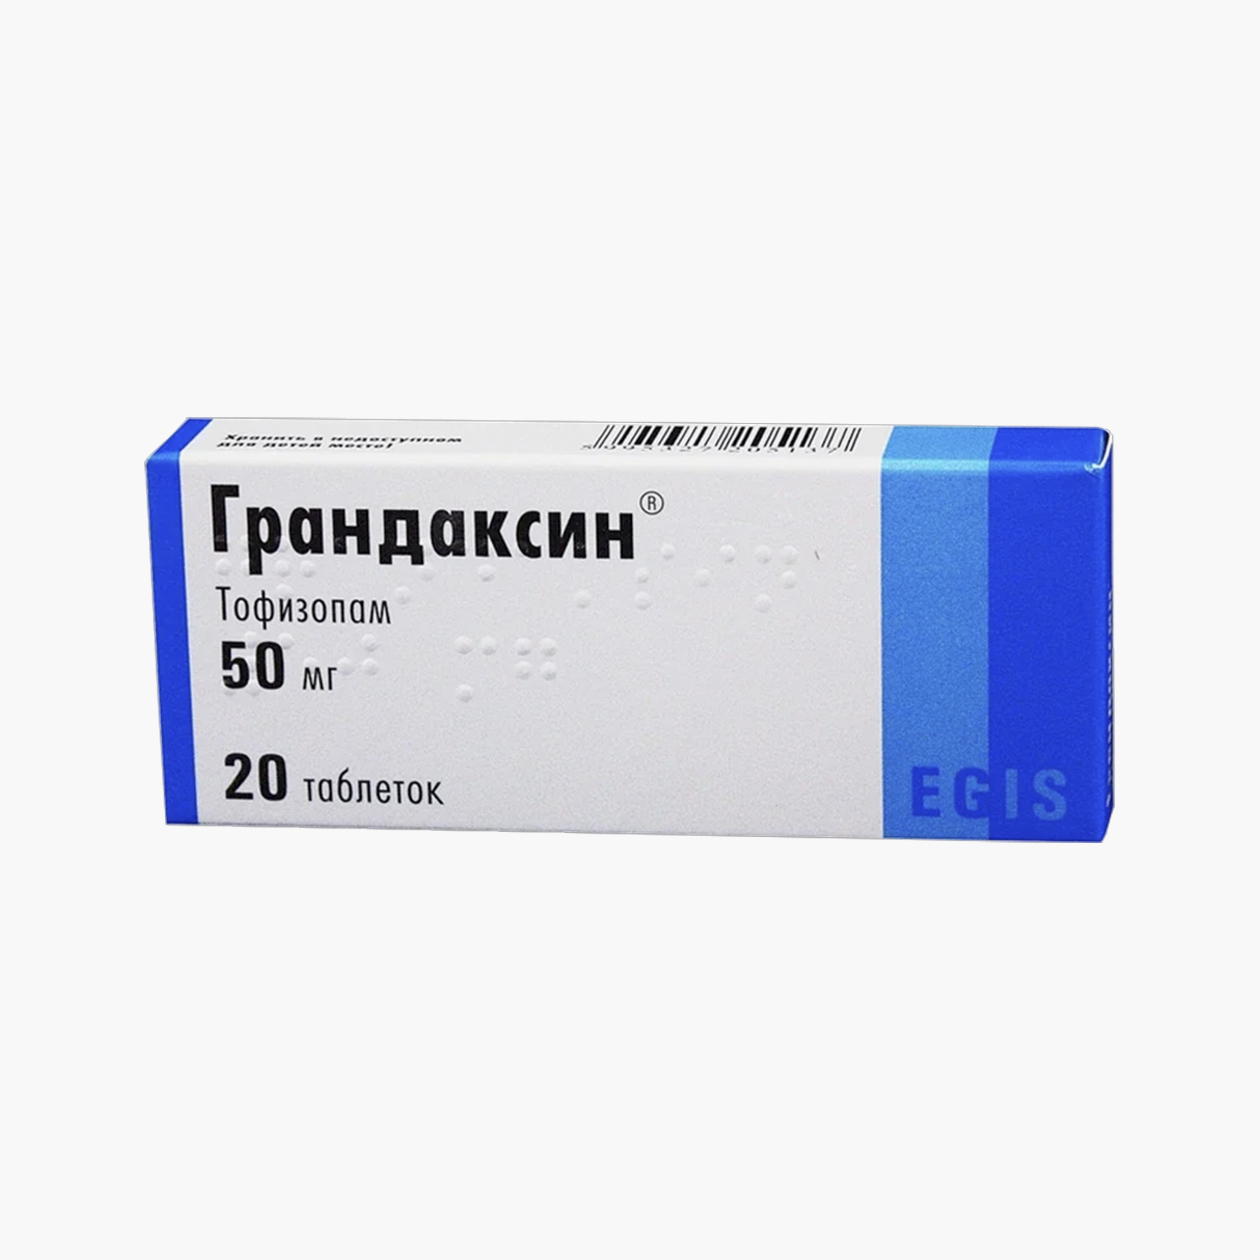 Грандаксин — препарат на основе тофизопама. Источник: asna.ru